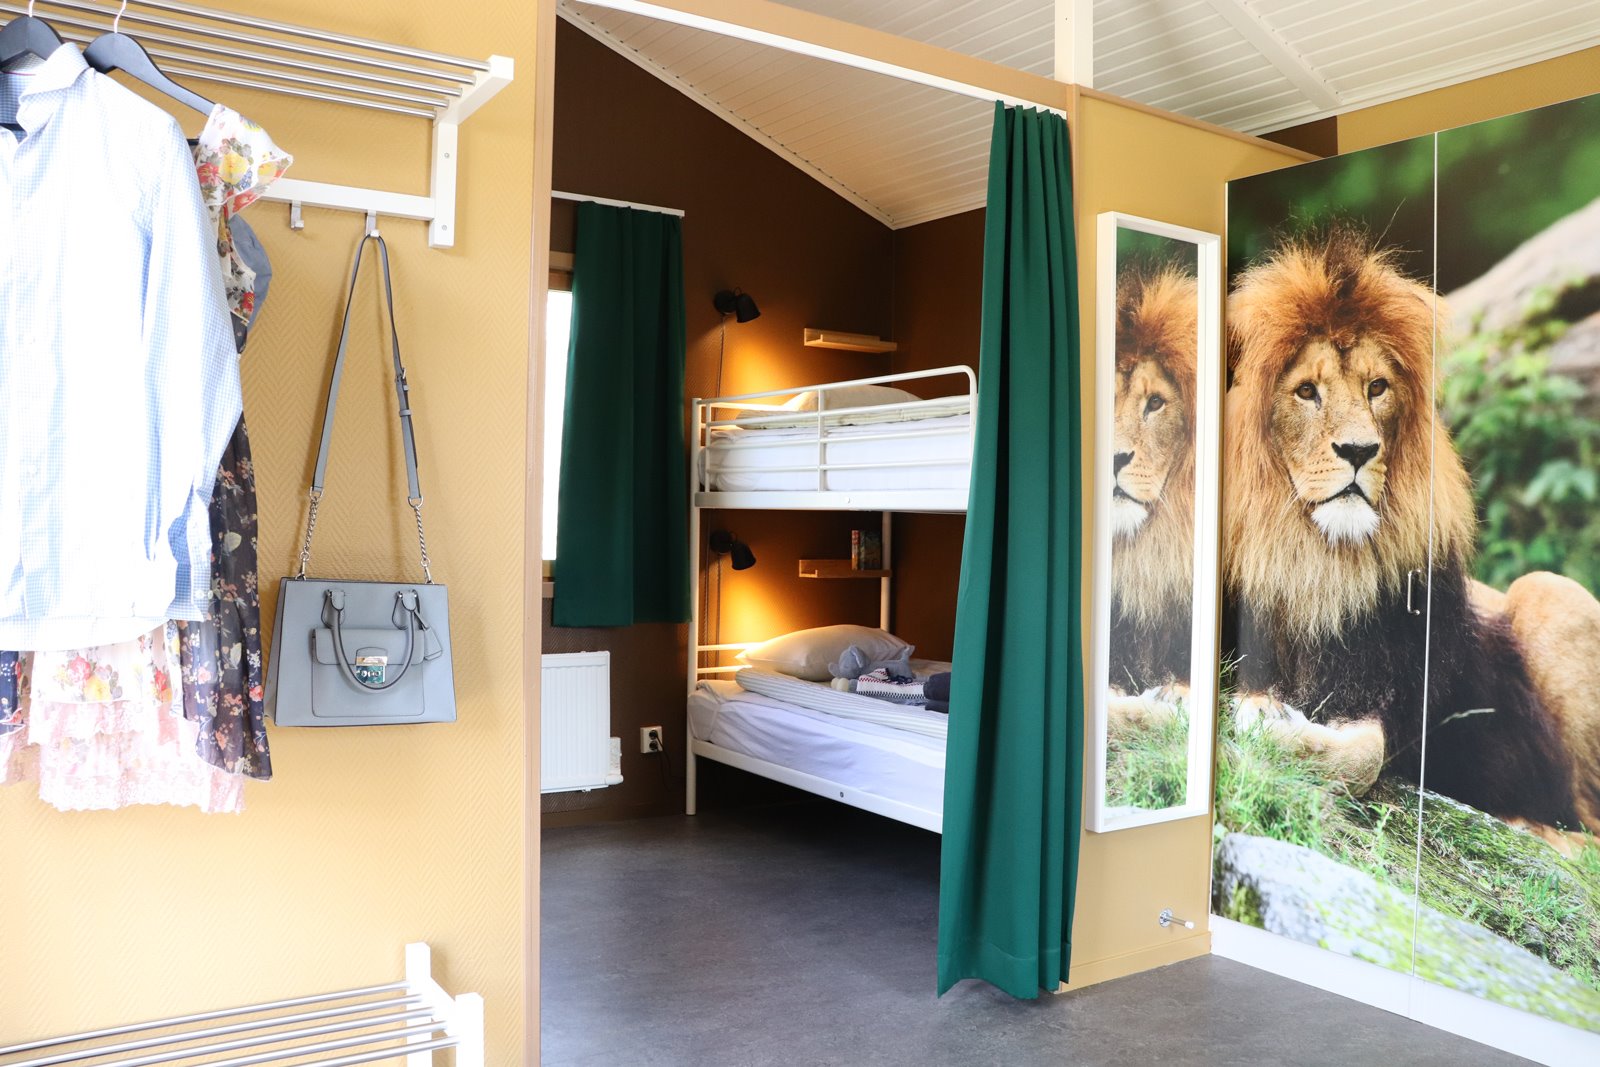 Vakantiehuis Lion (5 bedden, zonder WC/douche)